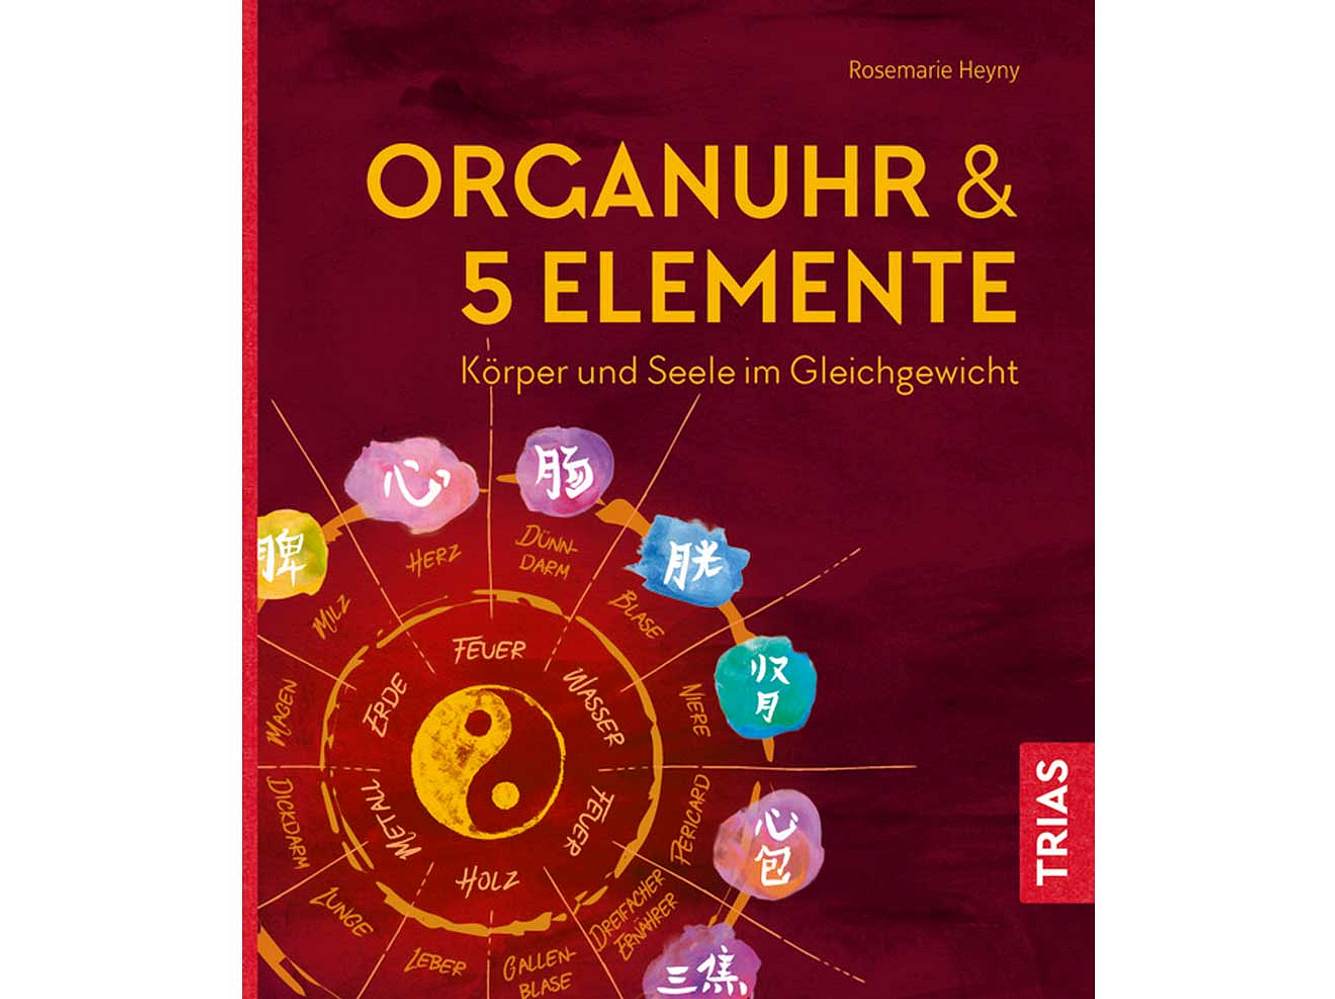 Organuhr & 5 Elemente von Rosemarie Heyny, erschienen im Trias-Verlag, erhältlich für 14,99 Euro.